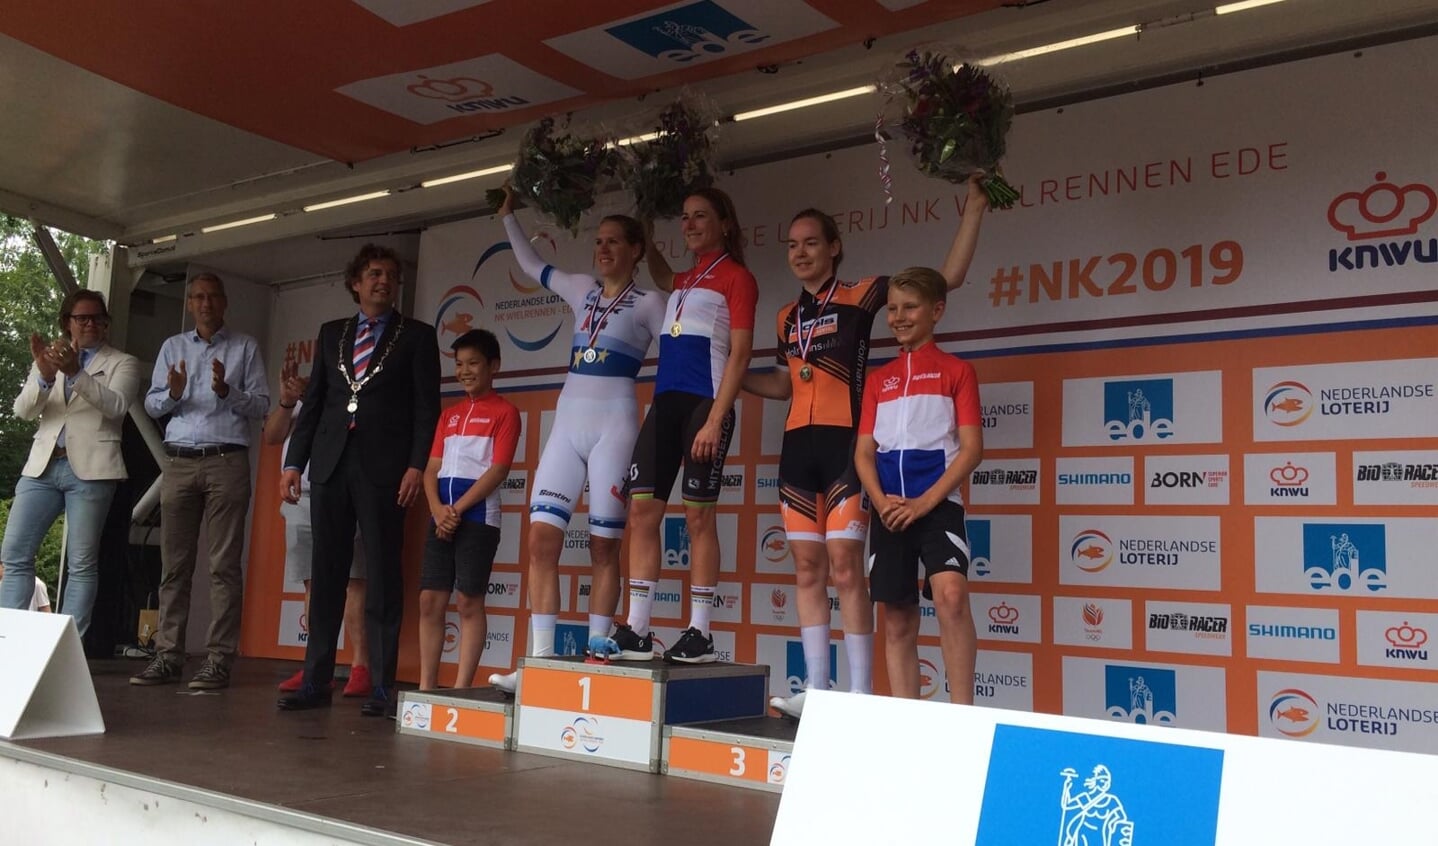 Annemiek van Vleuten (midden), Ellen van Dijk (links) en Anna van der Breggen (rechts) op het podium in Ede.